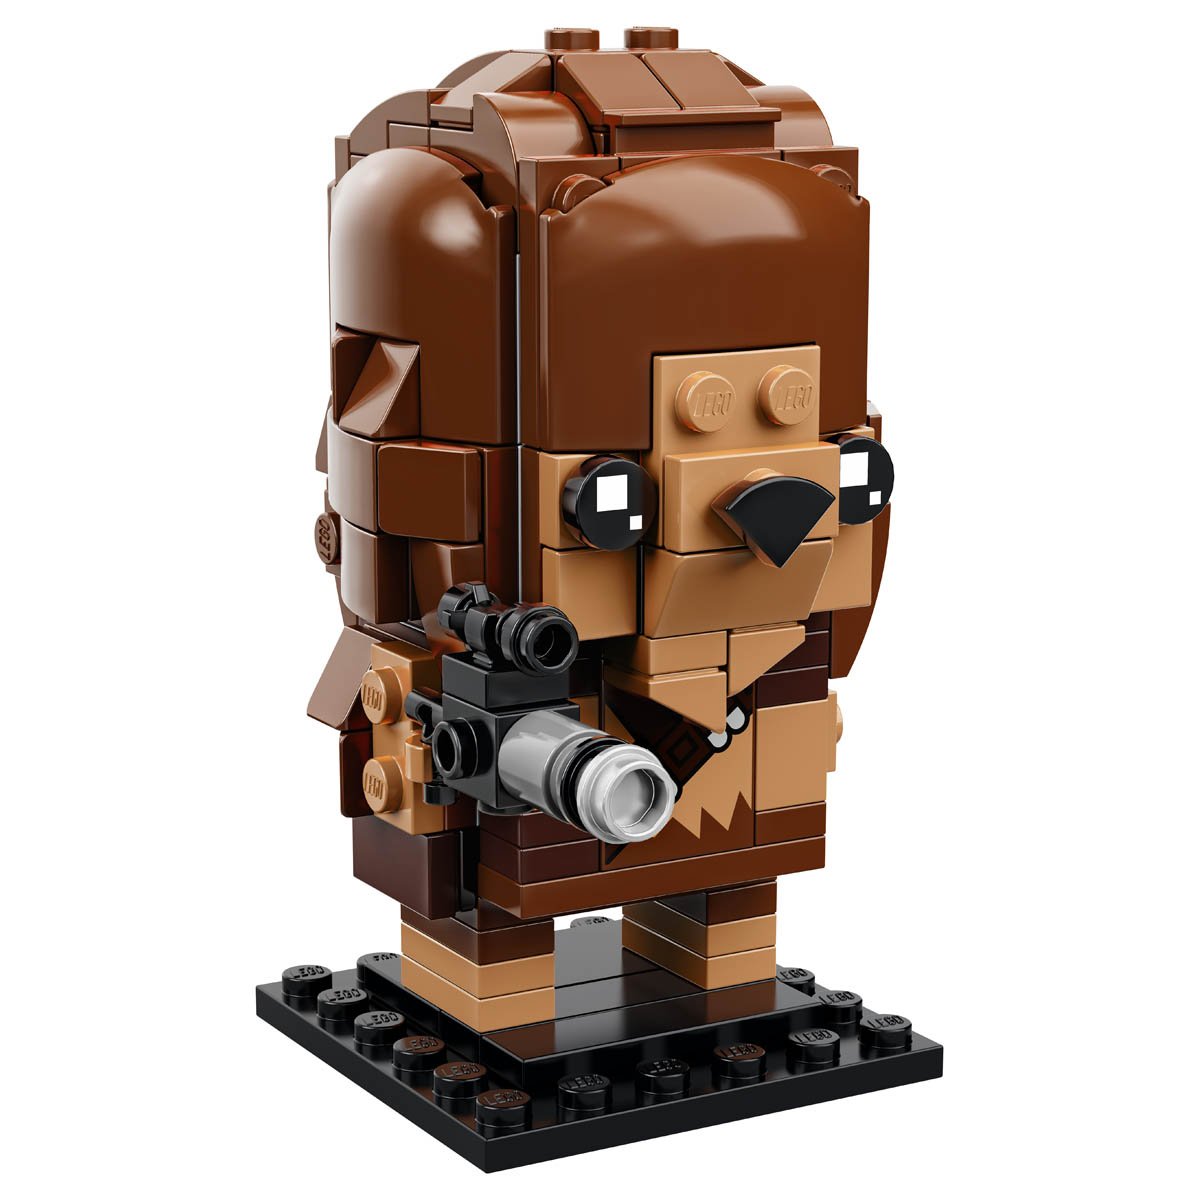 Brickheadz Chewbacca Star Wars Lego